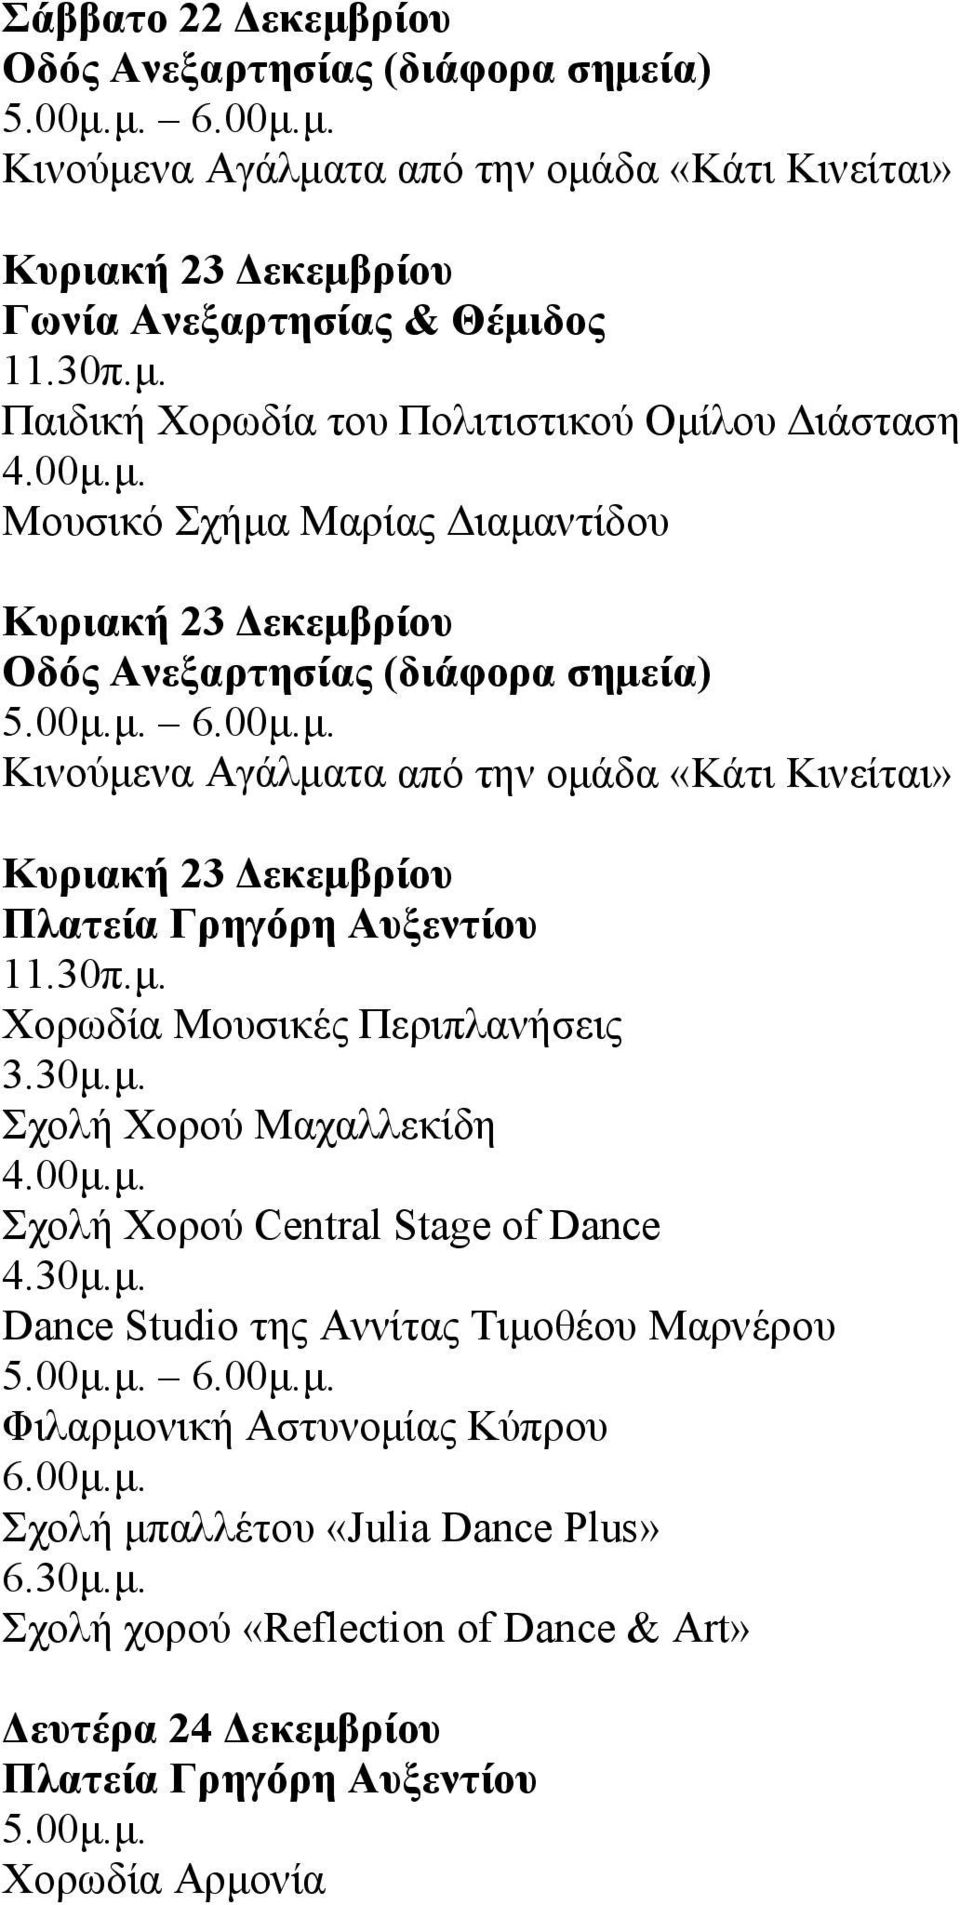 30μ.μ. Dance Studio της Αννίτας Τιμοθέου Μαρνέρου 5.00μ.μ. 6.00μ.μ. Φιλαρμονική Αστυνομίας Κύπρου 6.00μ.μ. Σχολή μπαλλέτου «Julia Dance Plus» 6.30μ.μ. Σχολή χορού «Reflection of Dance & Art» Δευτέρα 24 Δεκεμβρίου 5.